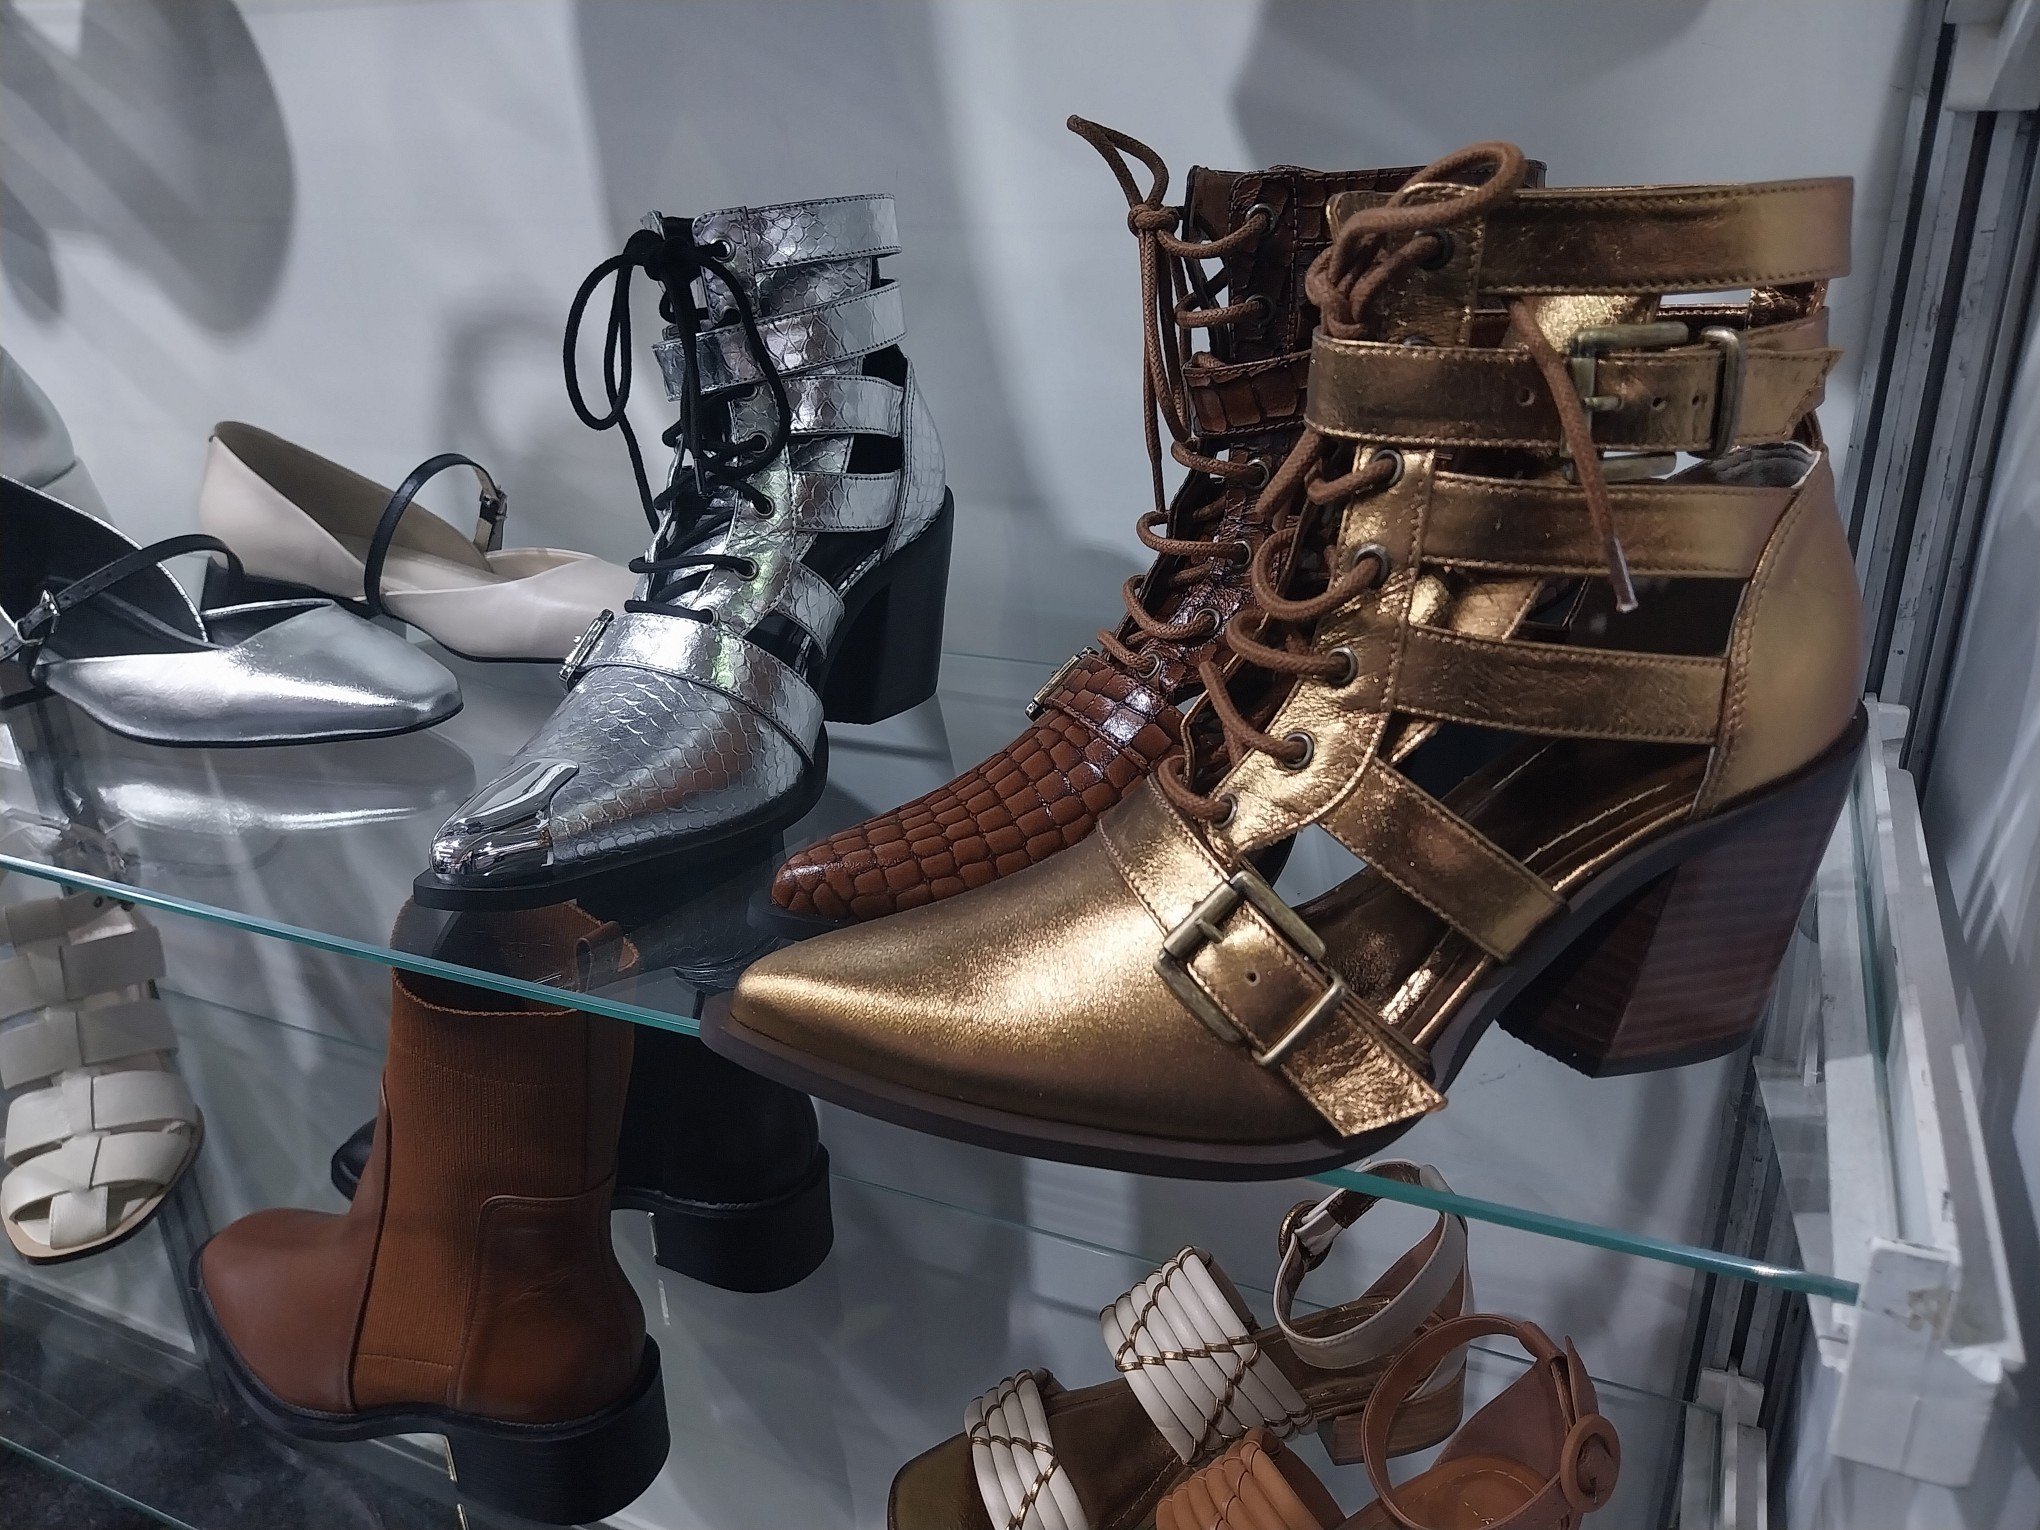 ZERO GRAU: Tendências para coleções de calçados e bolsas são apresentadas na feira; veja fotos